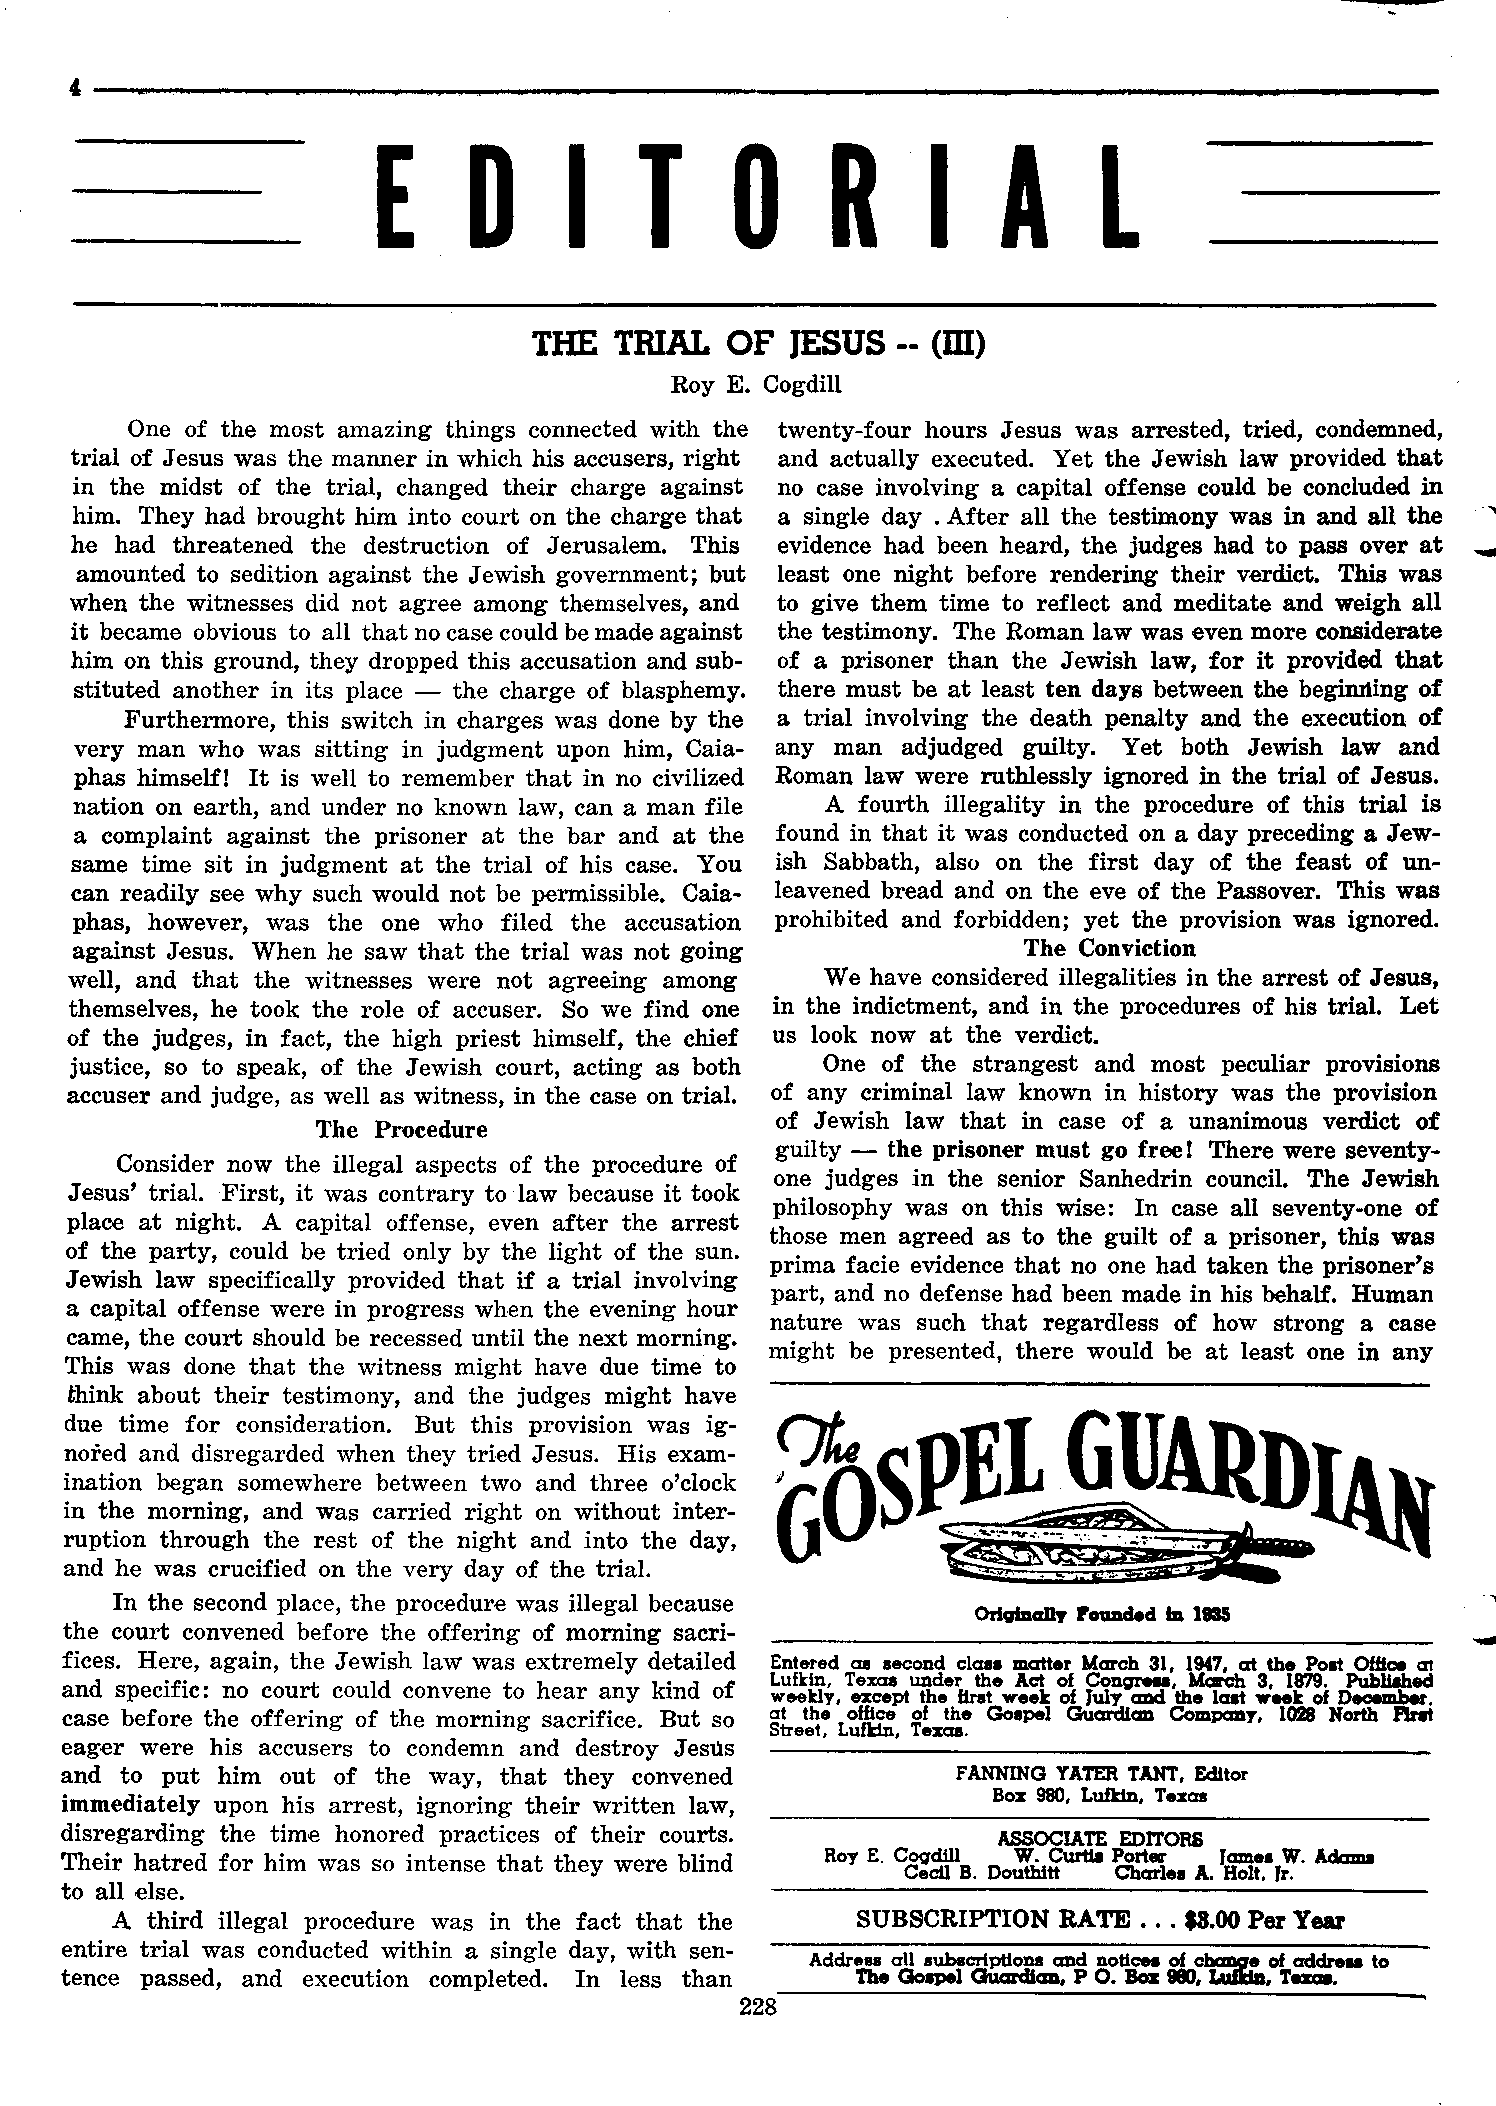 Gospel Guardian Original: Vol.10 No.15 Pg.4